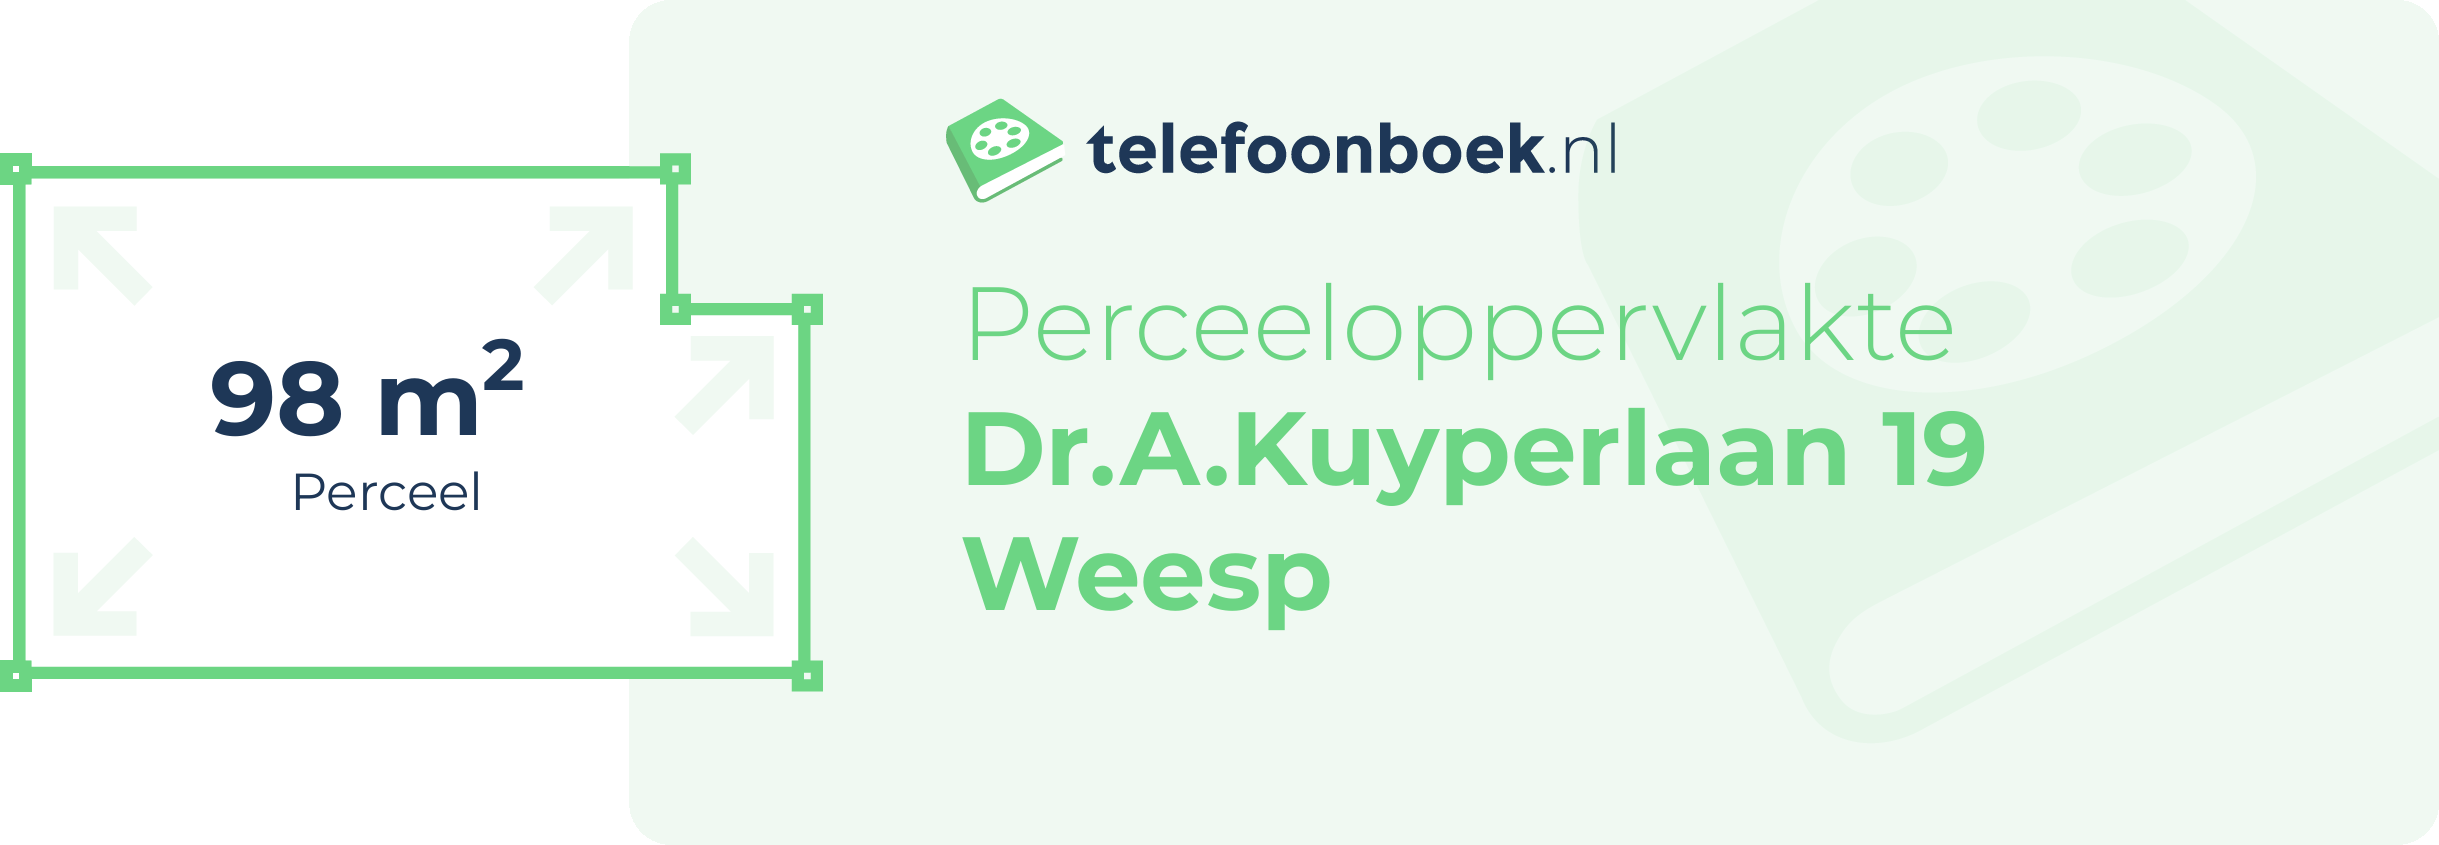 Perceeloppervlakte Dr.A.Kuyperlaan 19 Weesp